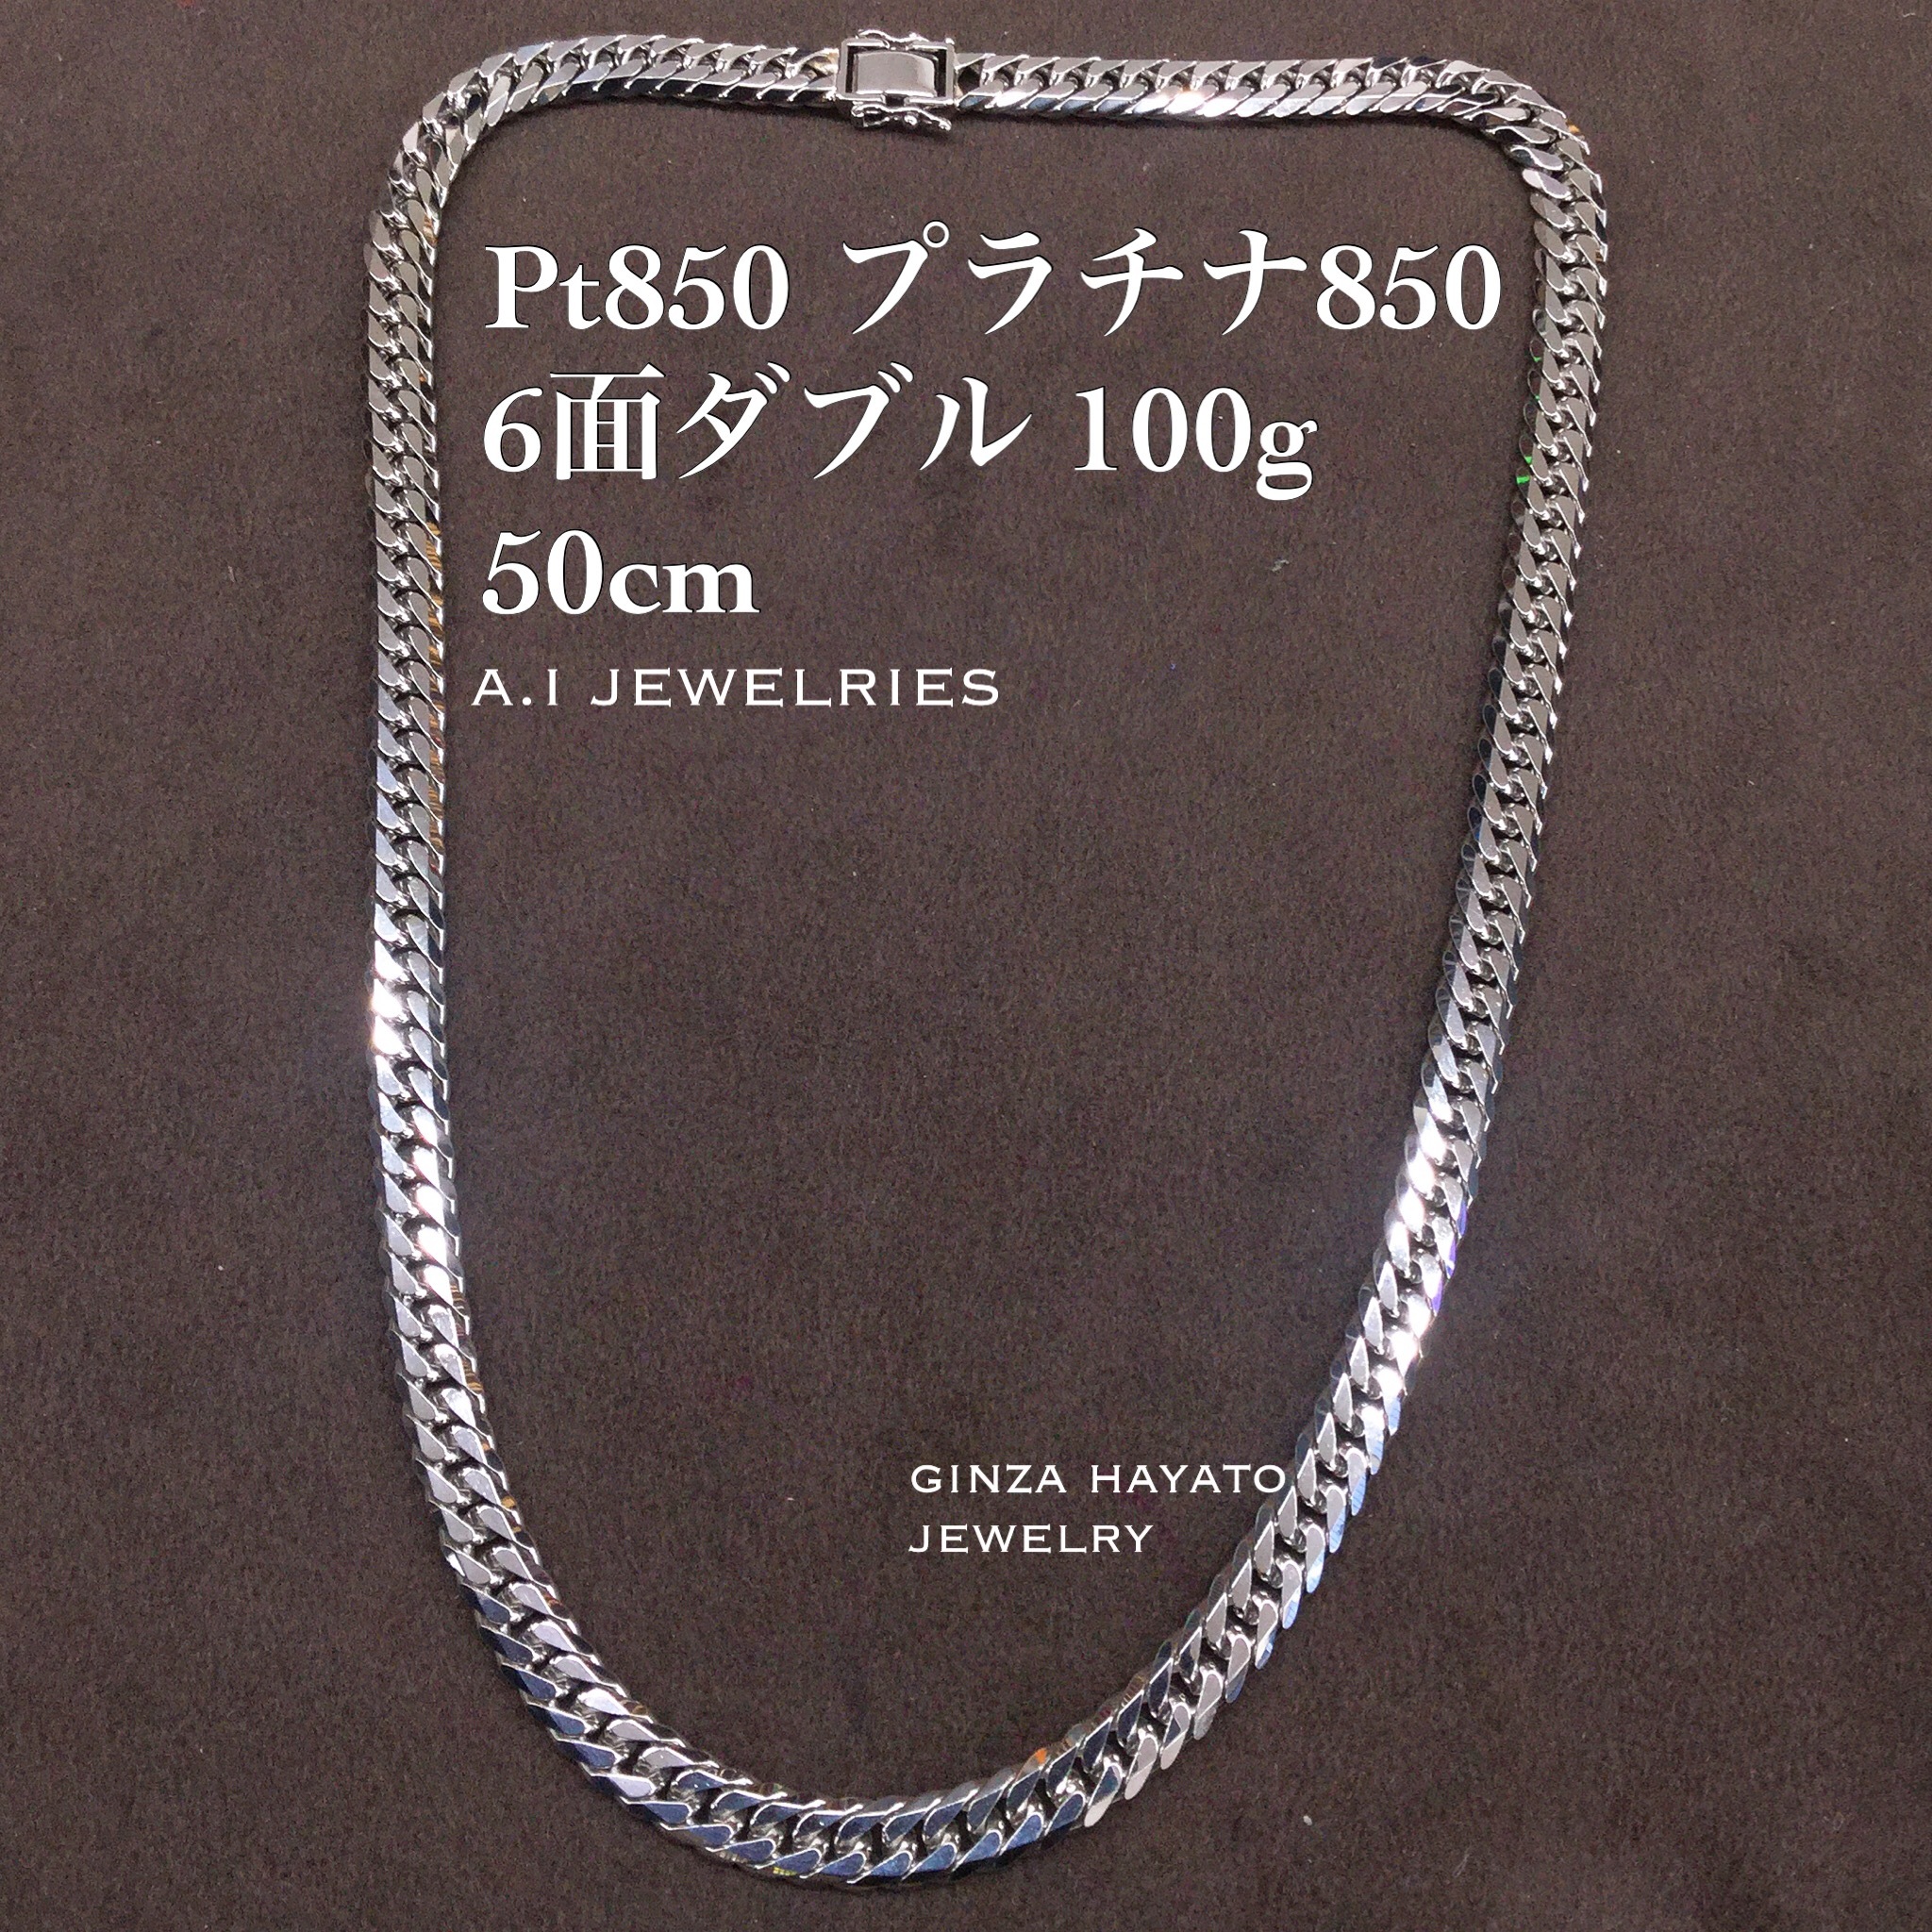 Pt850 プラチナ850 6面ダブル 100g 50cm 新品 本物 ネックレス メンズ 造幣局品位証明刻印入り 資産 A I Jewelries エイアイジュエリーズ